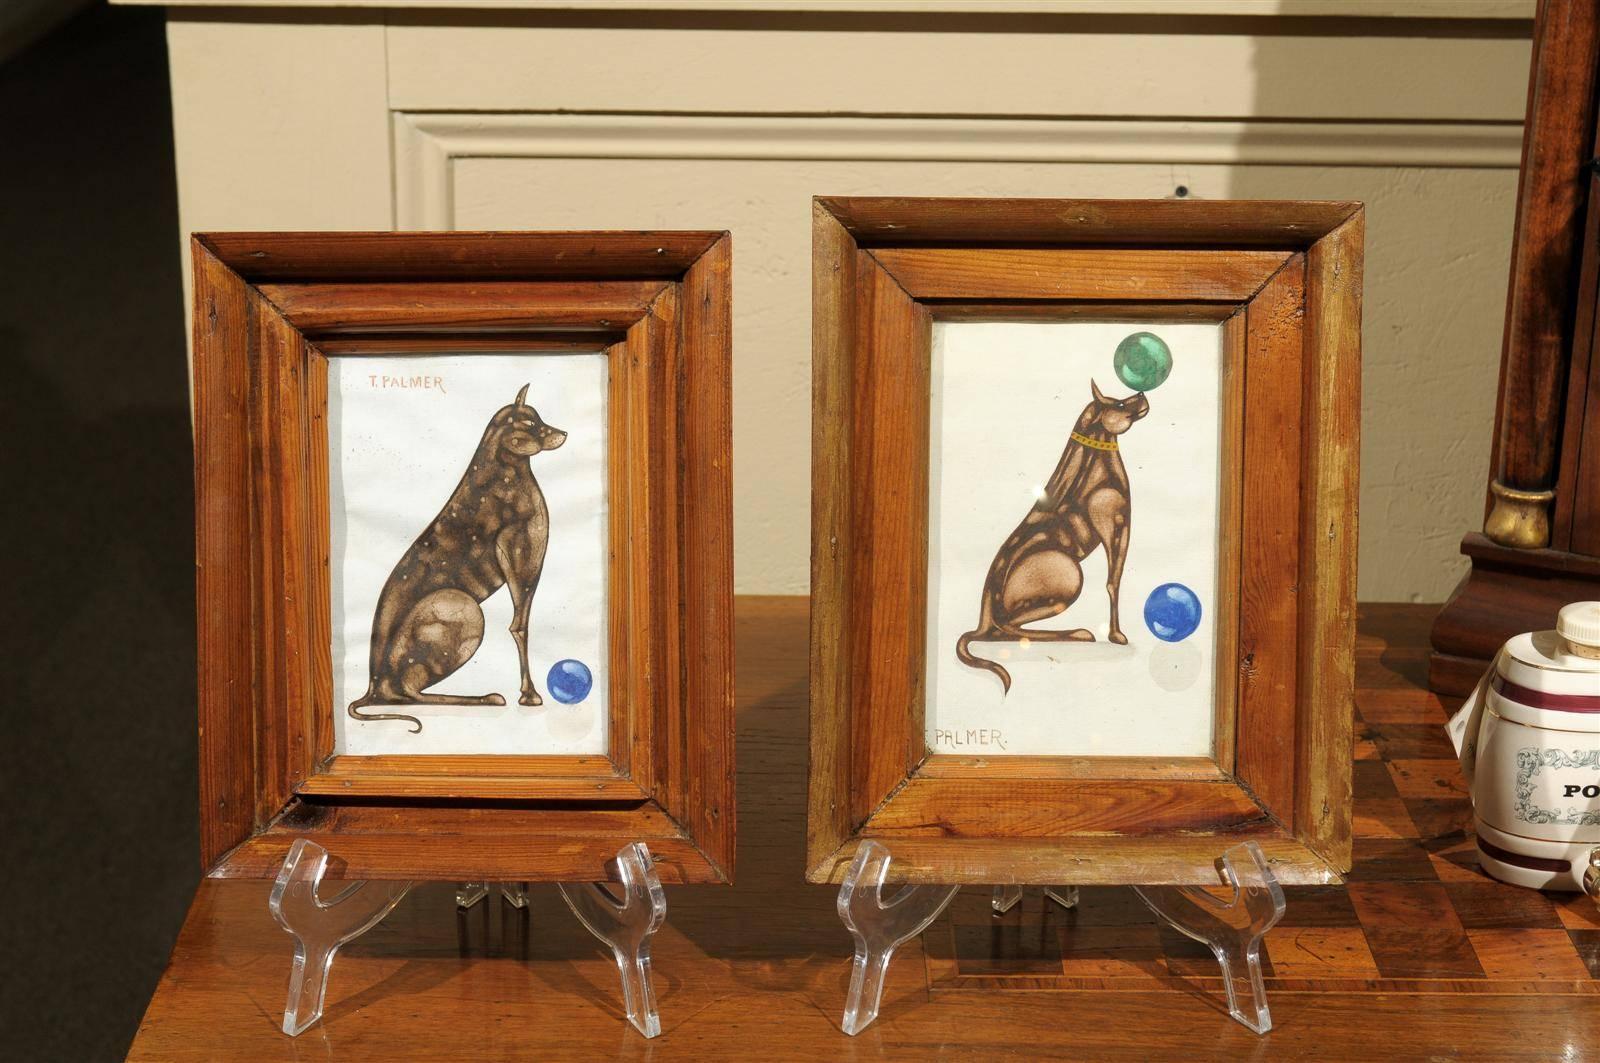 Début du 20e siècle Période Art Déco sympathique paire d'études de chiens à l'aquarelle anglaise, peintes par T. Palmer d'une manière stylisée avec des balles jouets. Signés et dans des cadres en bois fruitiers.